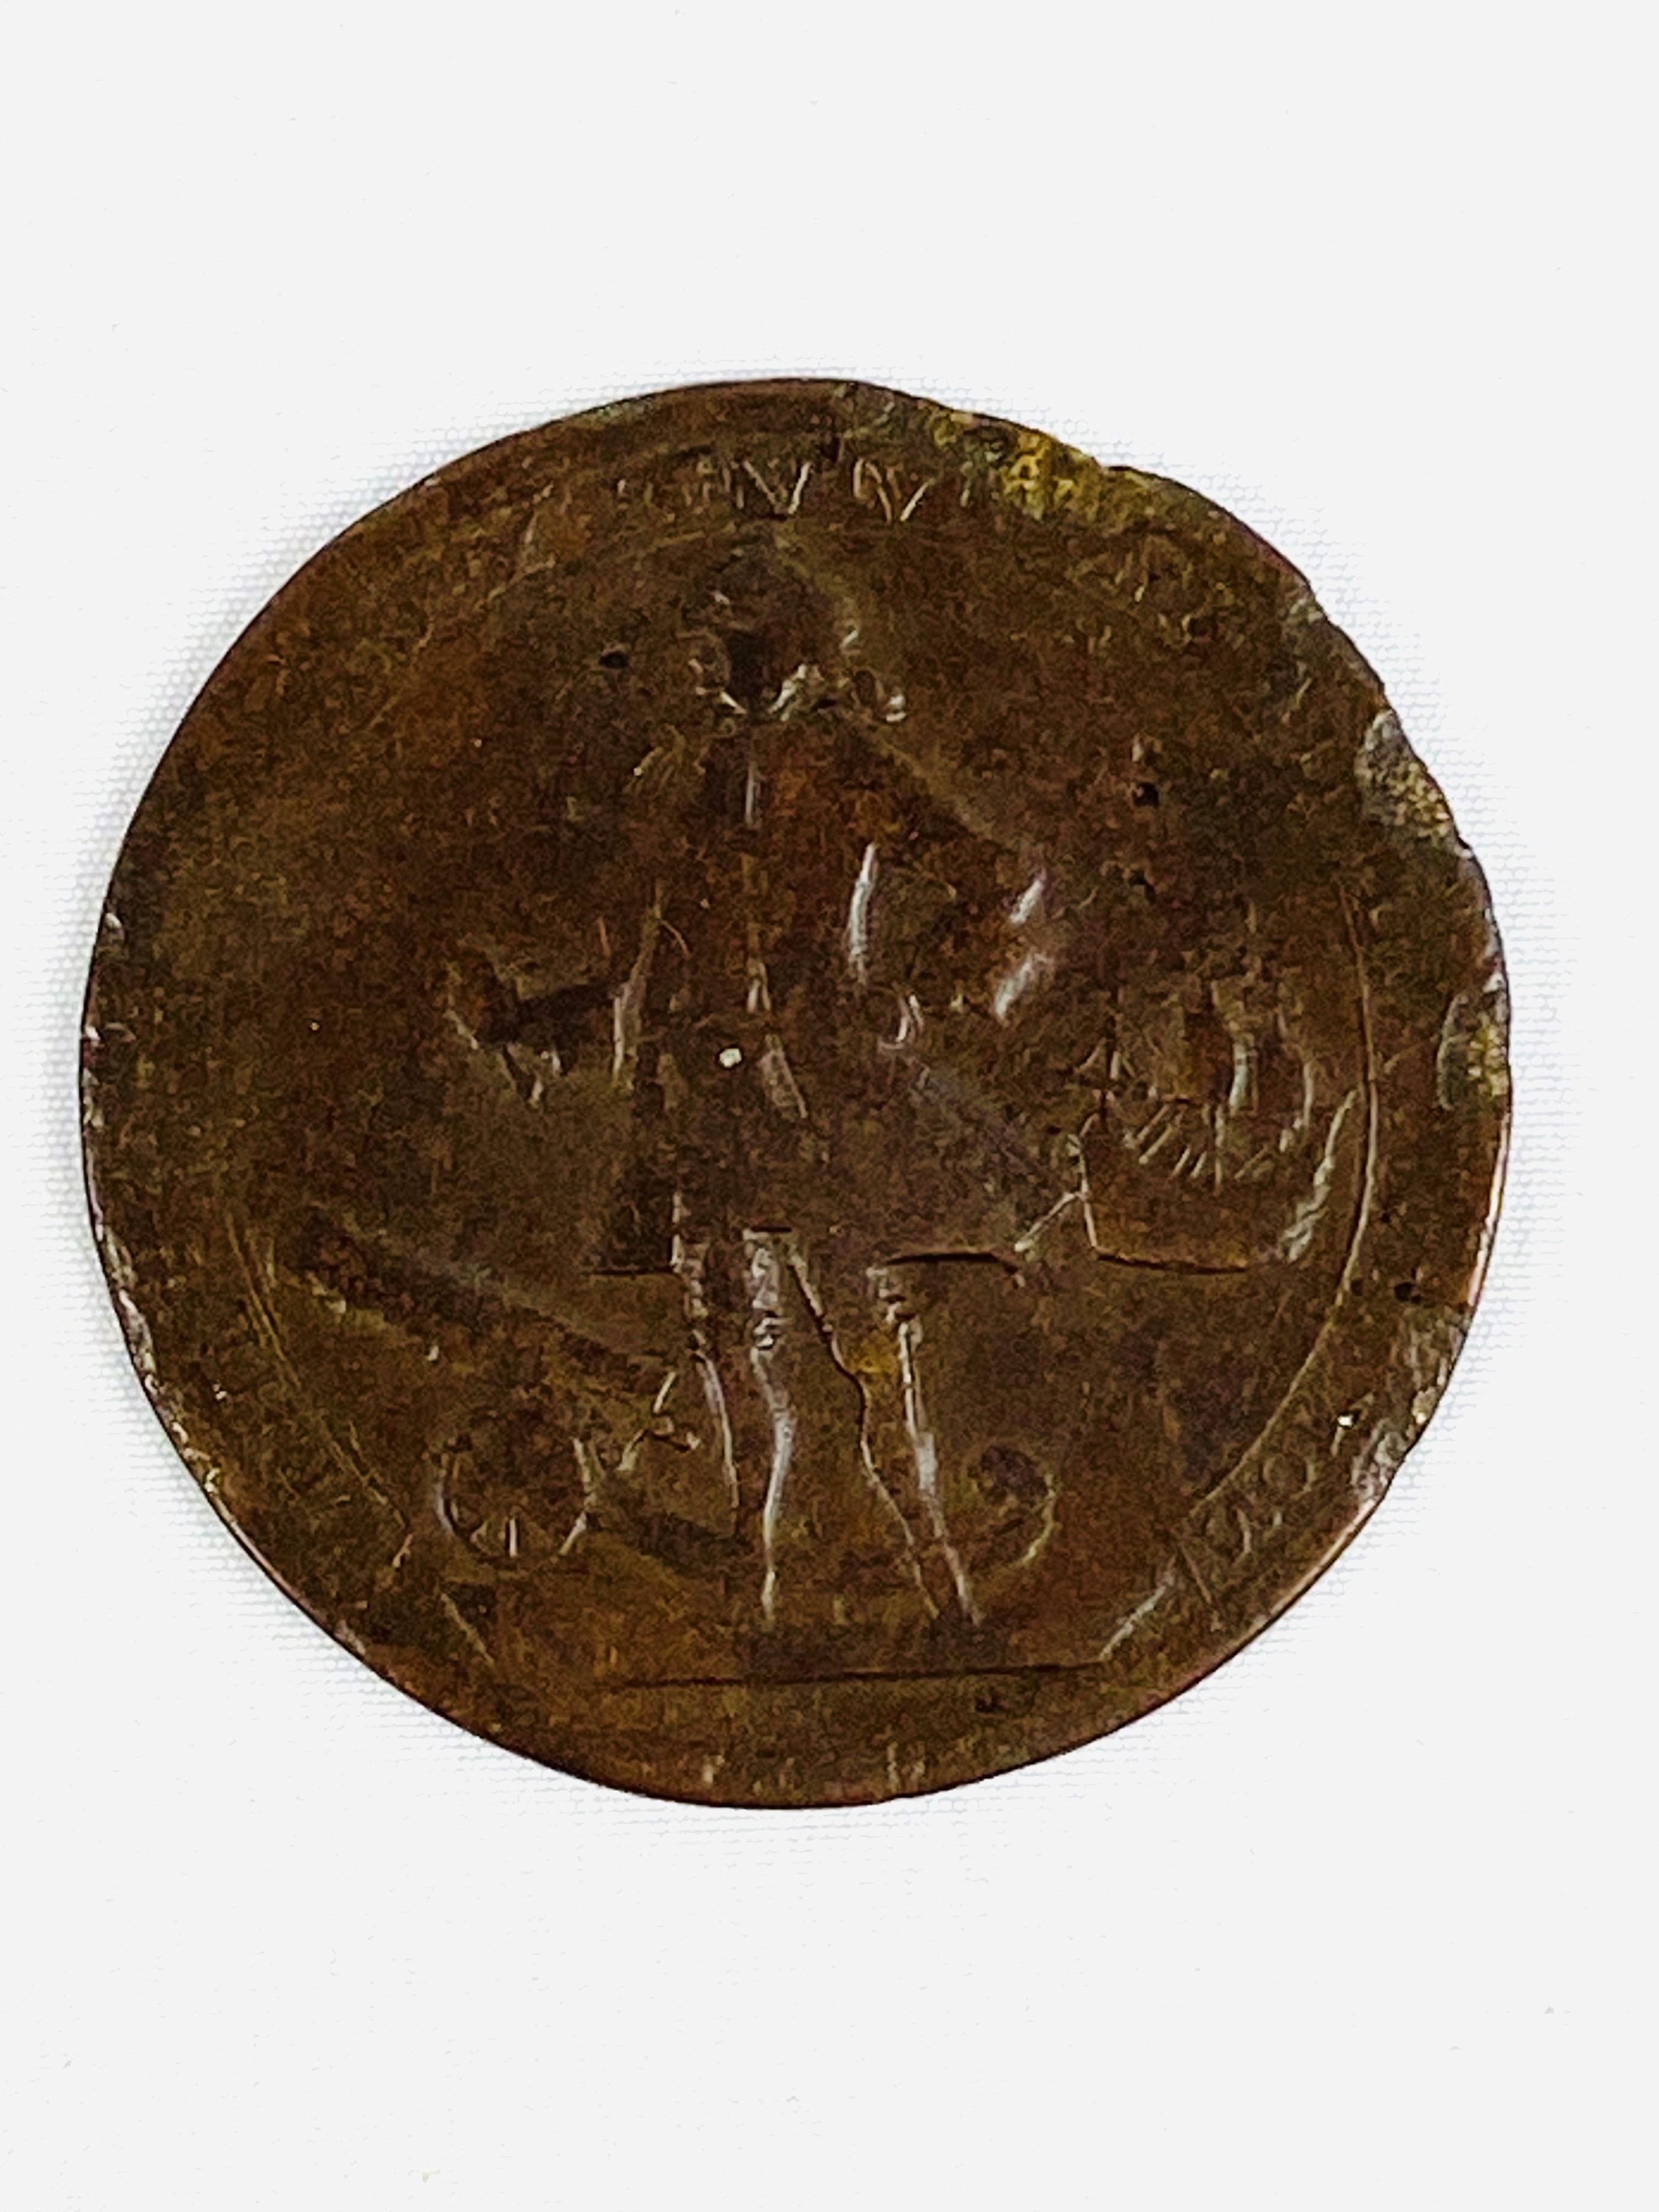 Admiral Vernon Portobello medal - Image 2 of 2